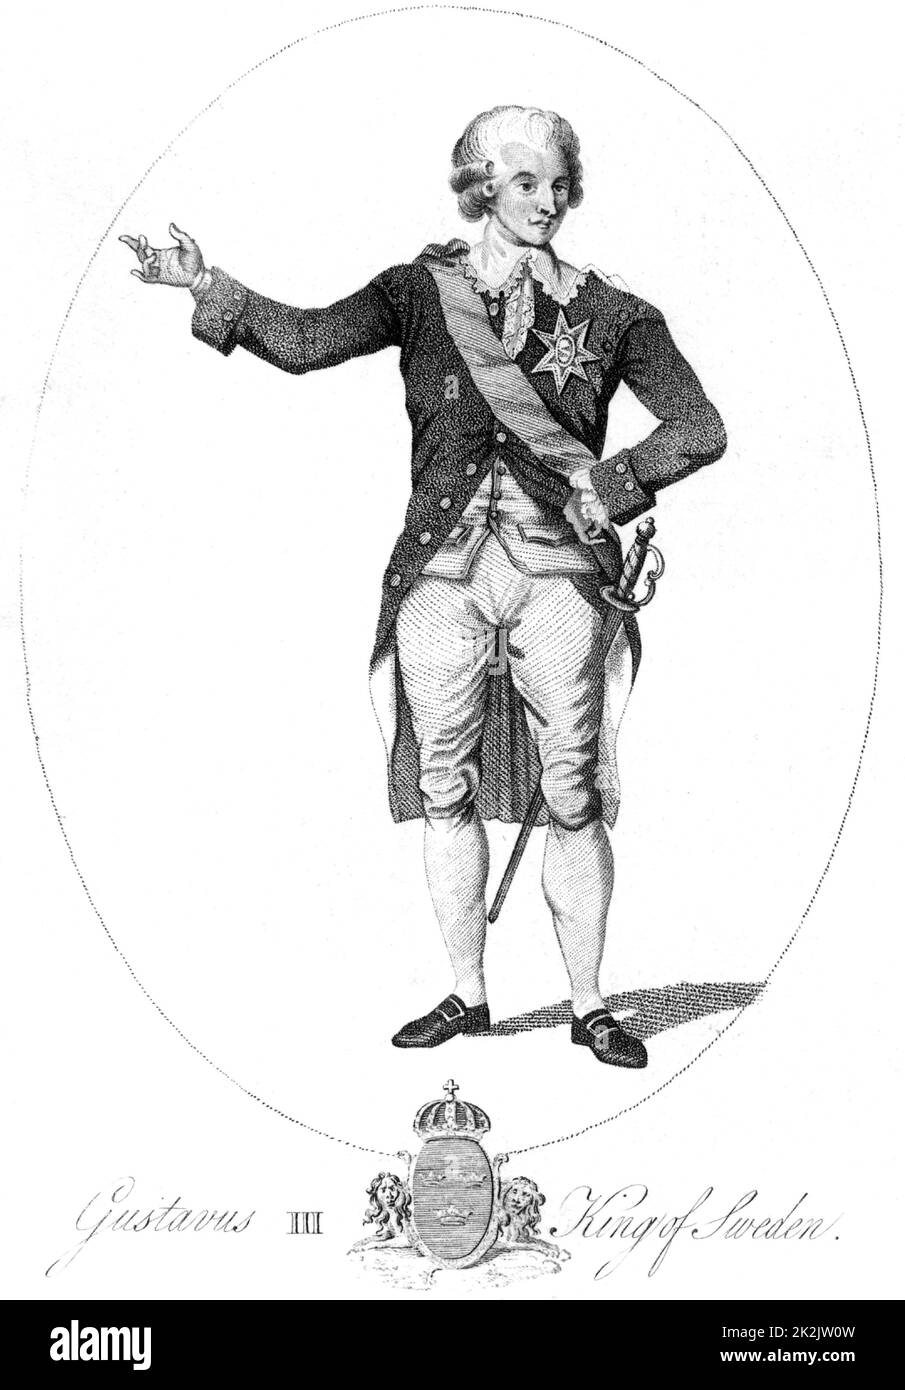 Gustavus III (1746-1792), roi de Suède de 1771 à 1792. Assassiné à une balle masquée. Le livret de l'opéra de Verdi 'un Ballo in maschera' (Un bal masqué) était basé sur l'assassinat. gravure du 18th siècle. Banque D'Images